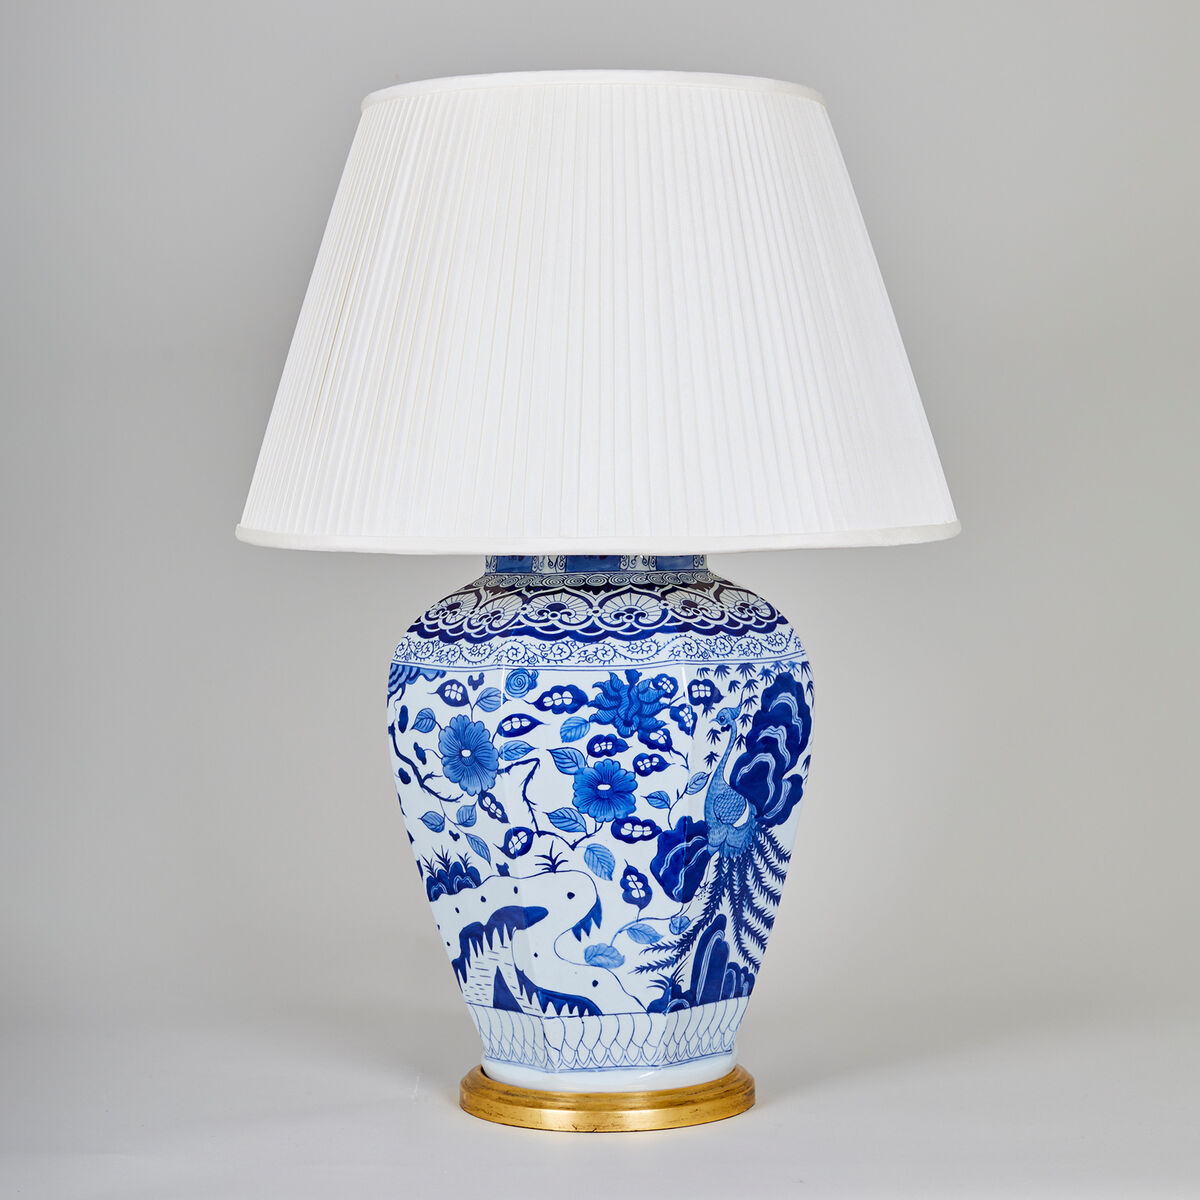 Octagonal Imari Porcelain Table Lamp - Blue/White